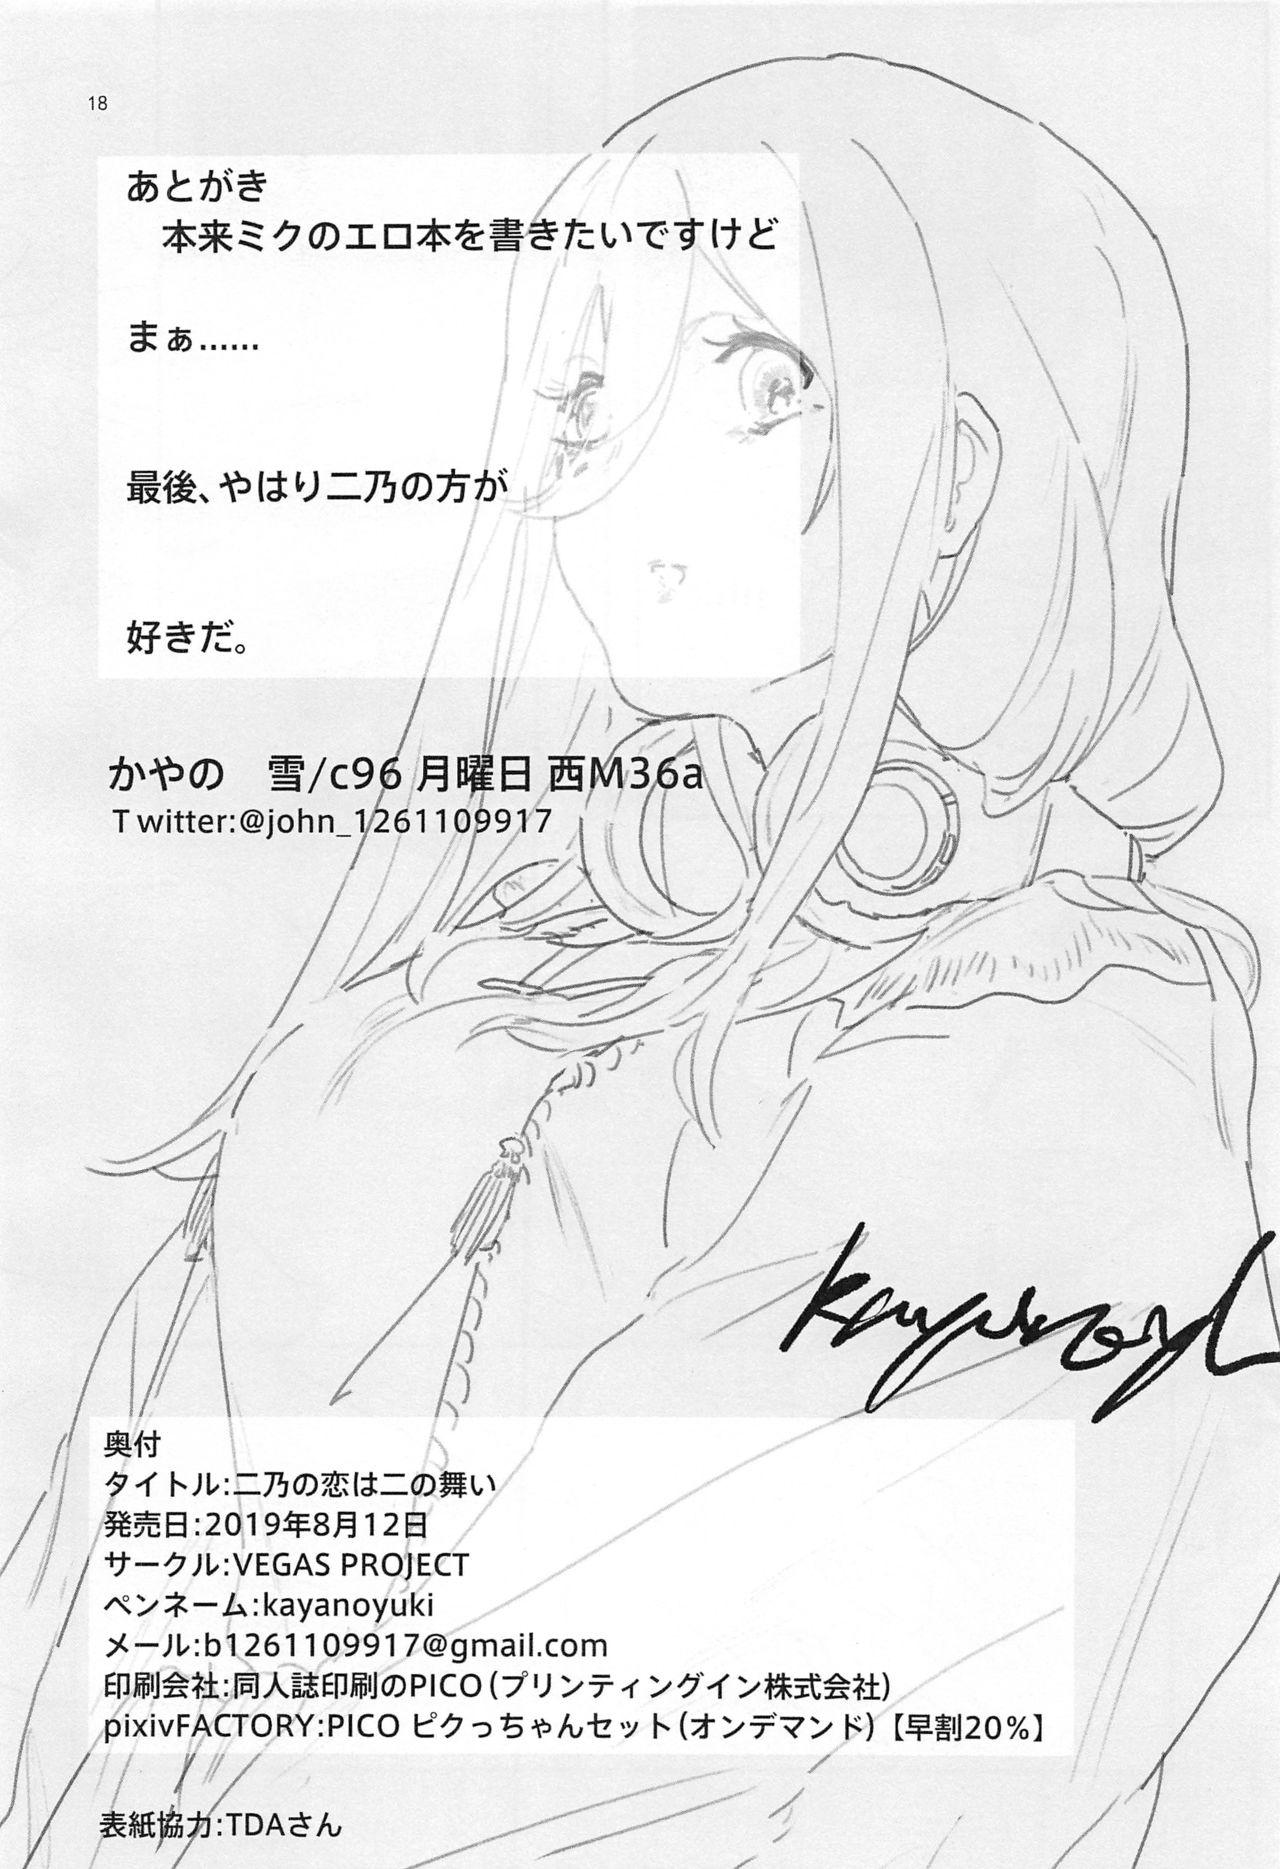 Pinay Nino no Koi wa Ninomai - Gotoubun no hanayome Rubbing - Page 17